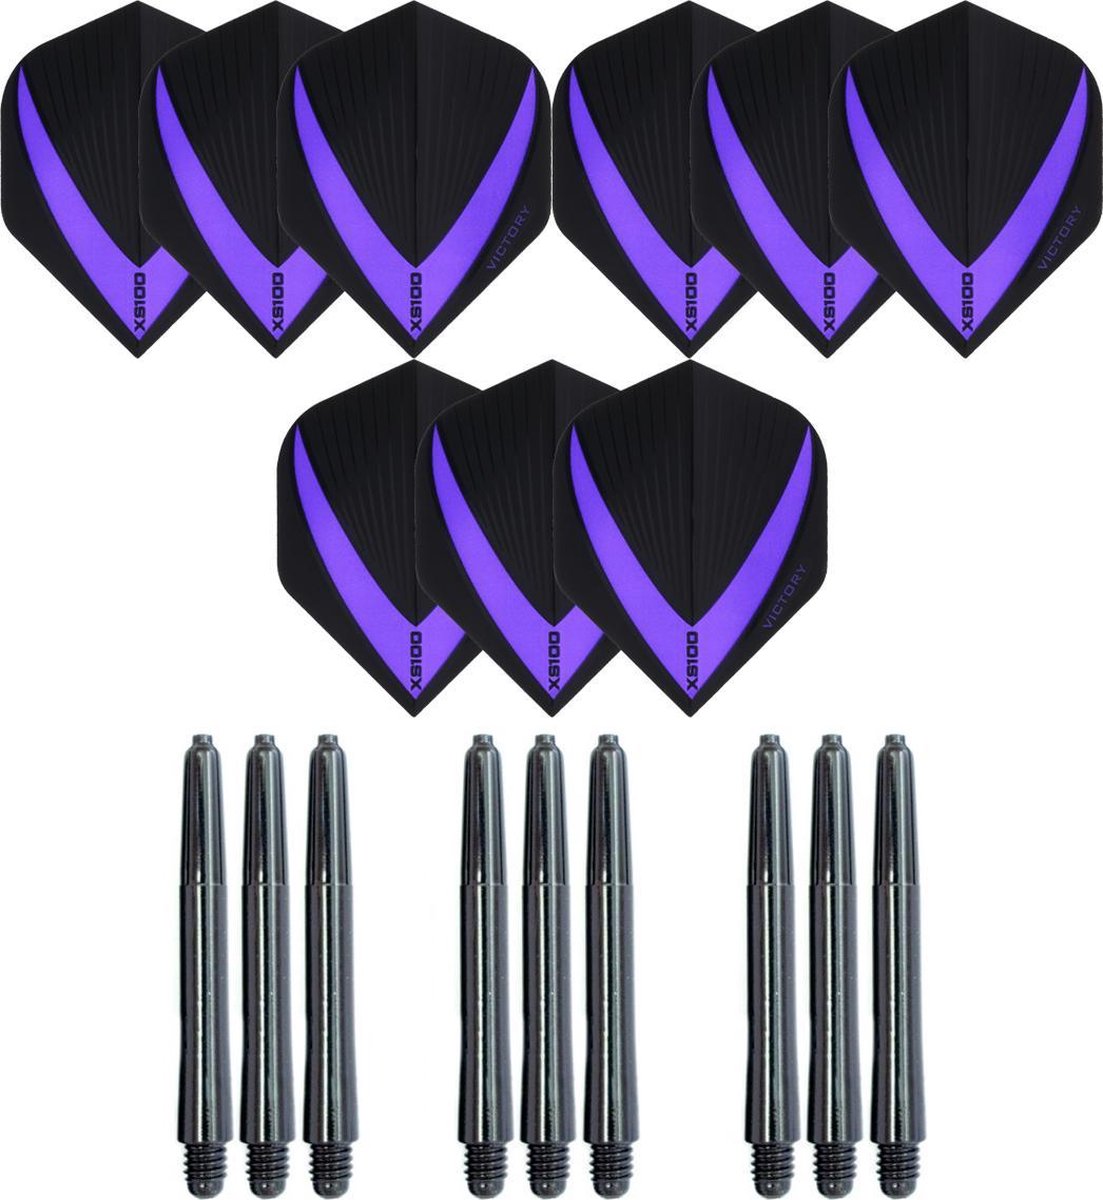 3 sets (9 stuks) Super Sterke - Paars - Vista-X - darts flights - inclusief 3 sets (9 stuks) - medium - darts shafts